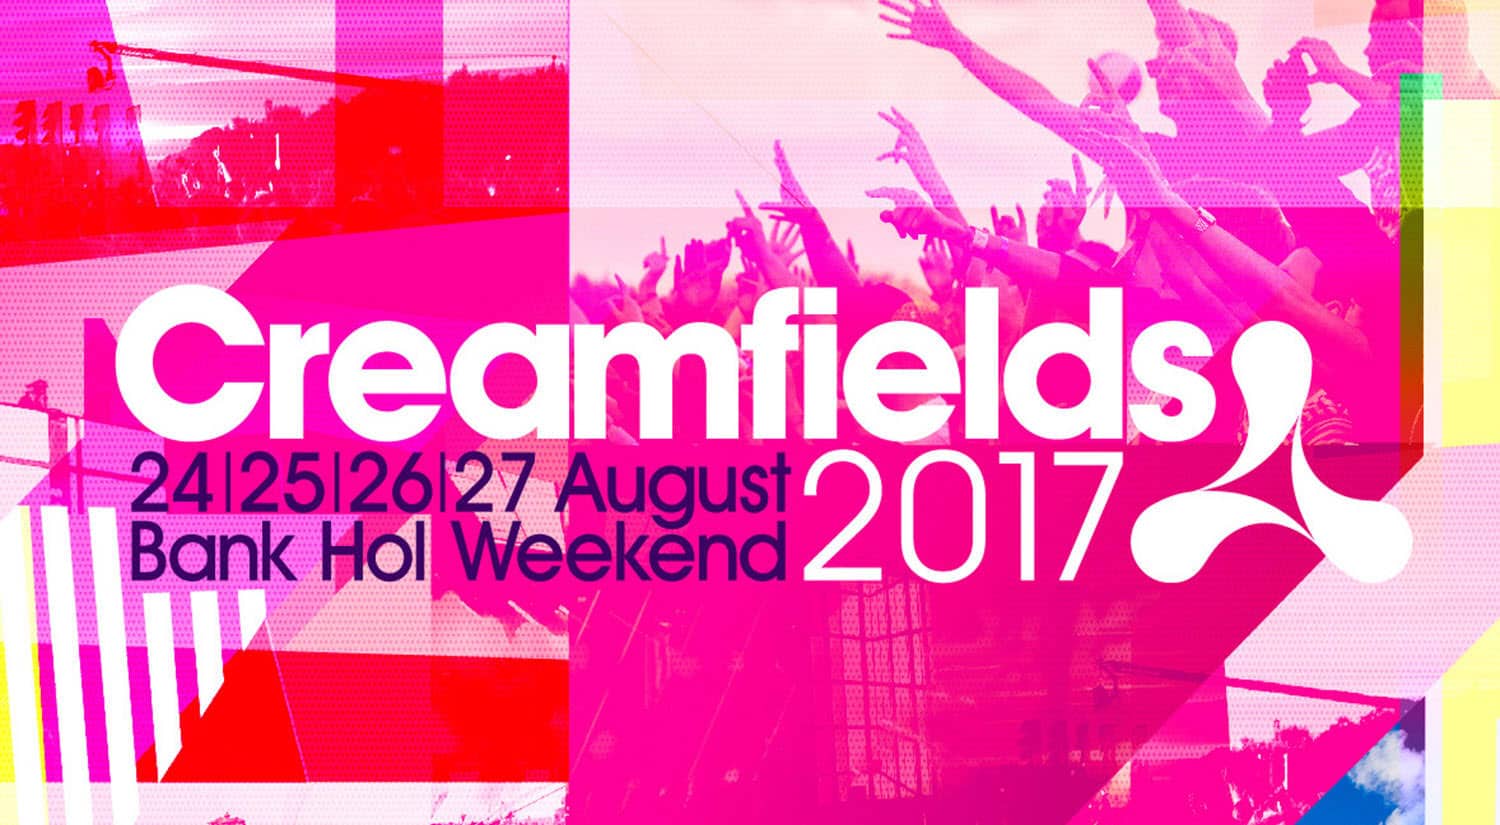 mejores eventos festivales musica electronica mundo primavera verano creamfields 2017